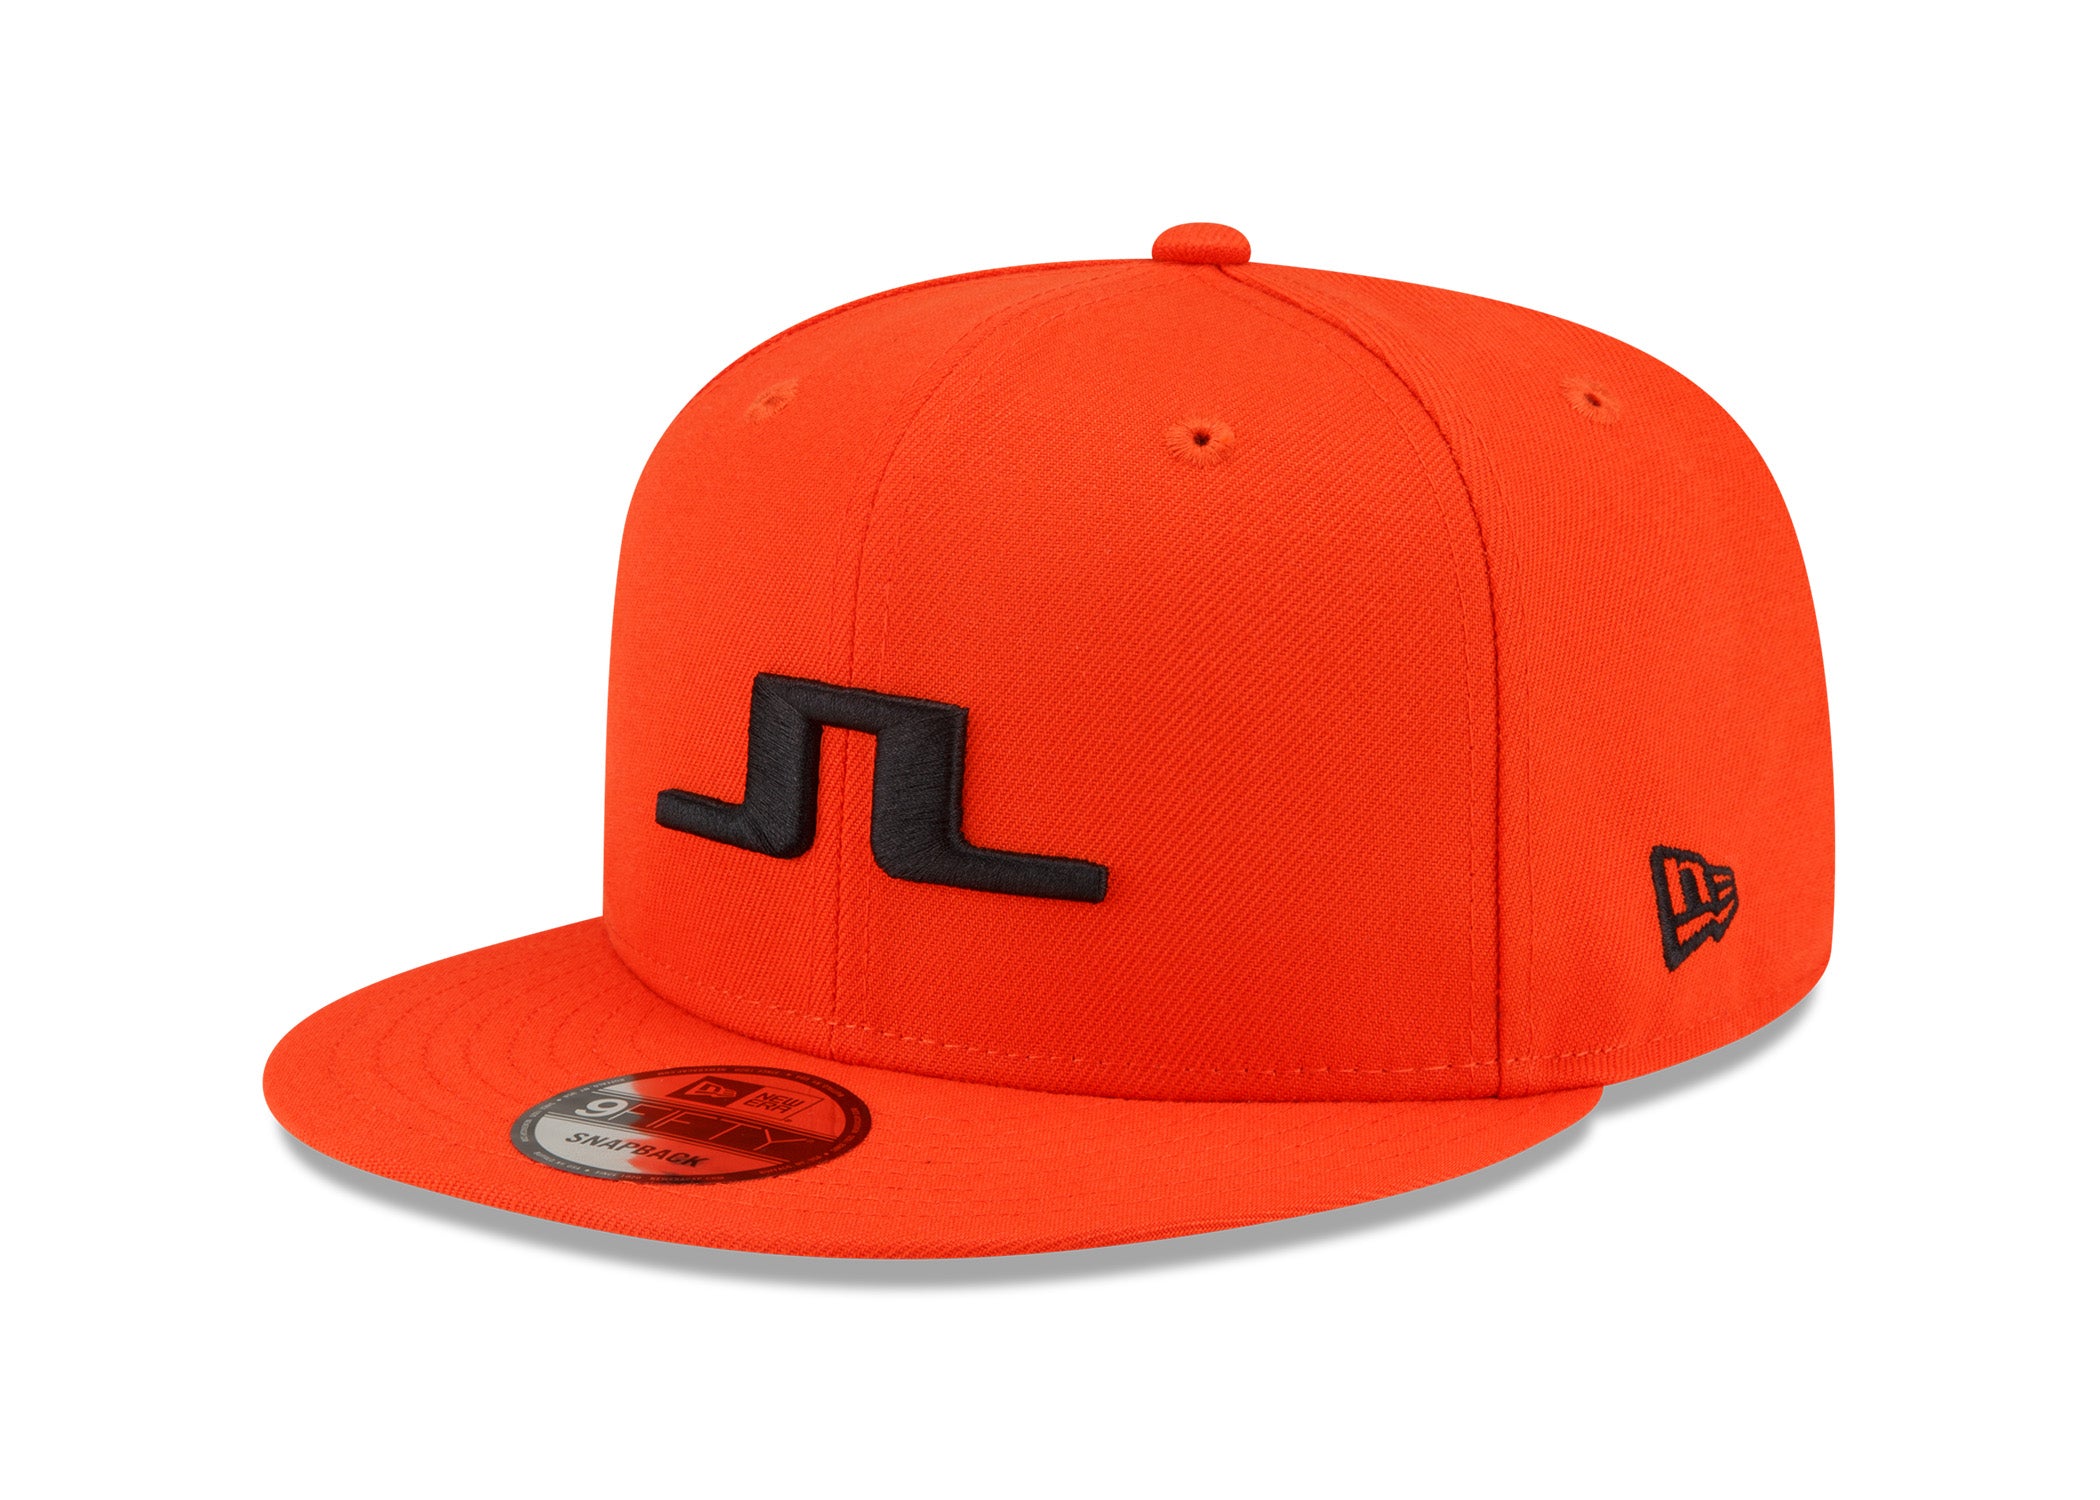 JL x New Era 9FIFTY Orange